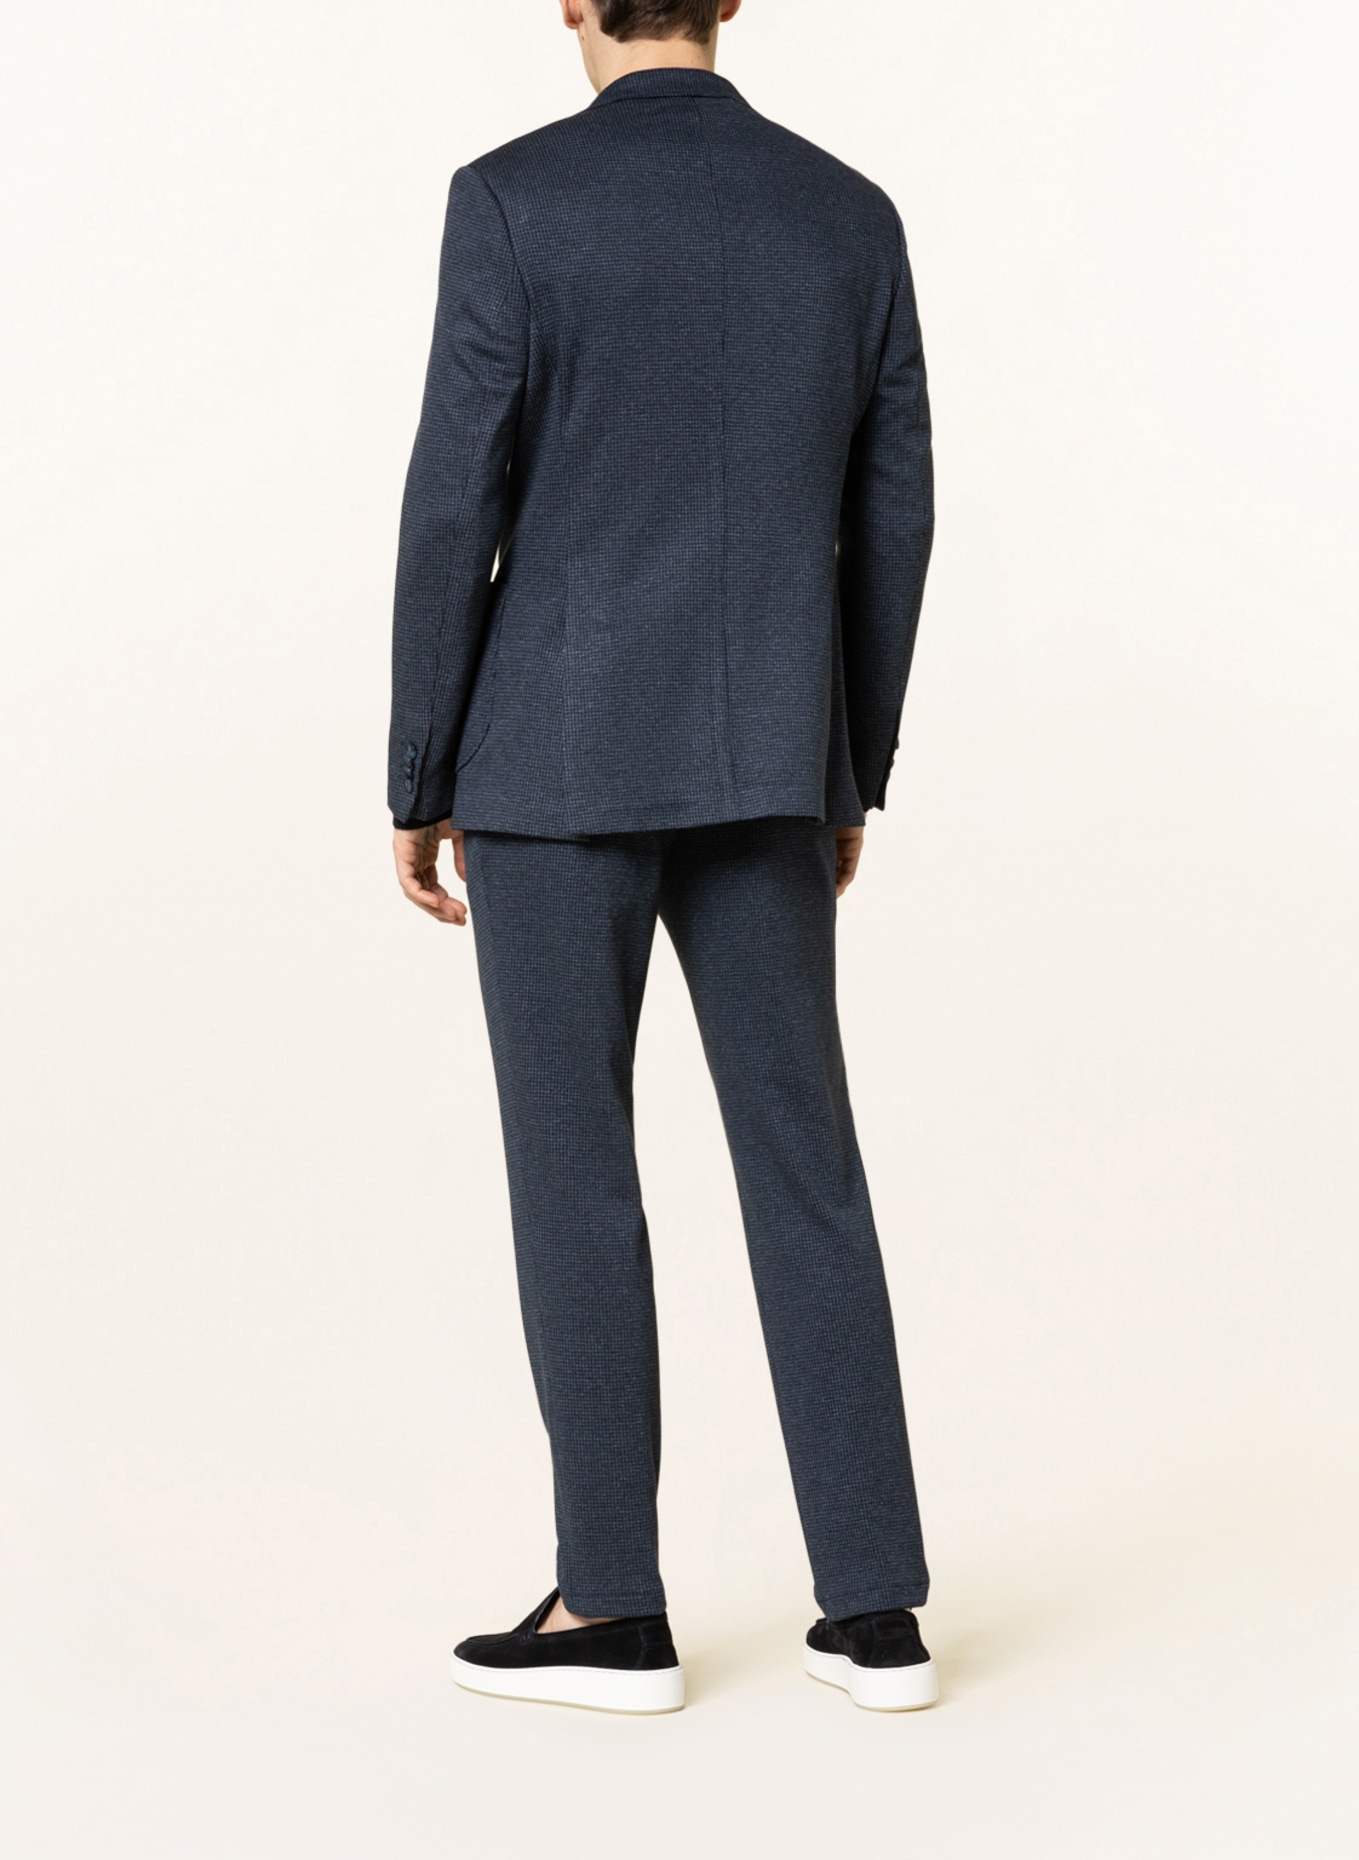 PAUL Suit jacket slim fit, Color: 660 navy (Image 3)